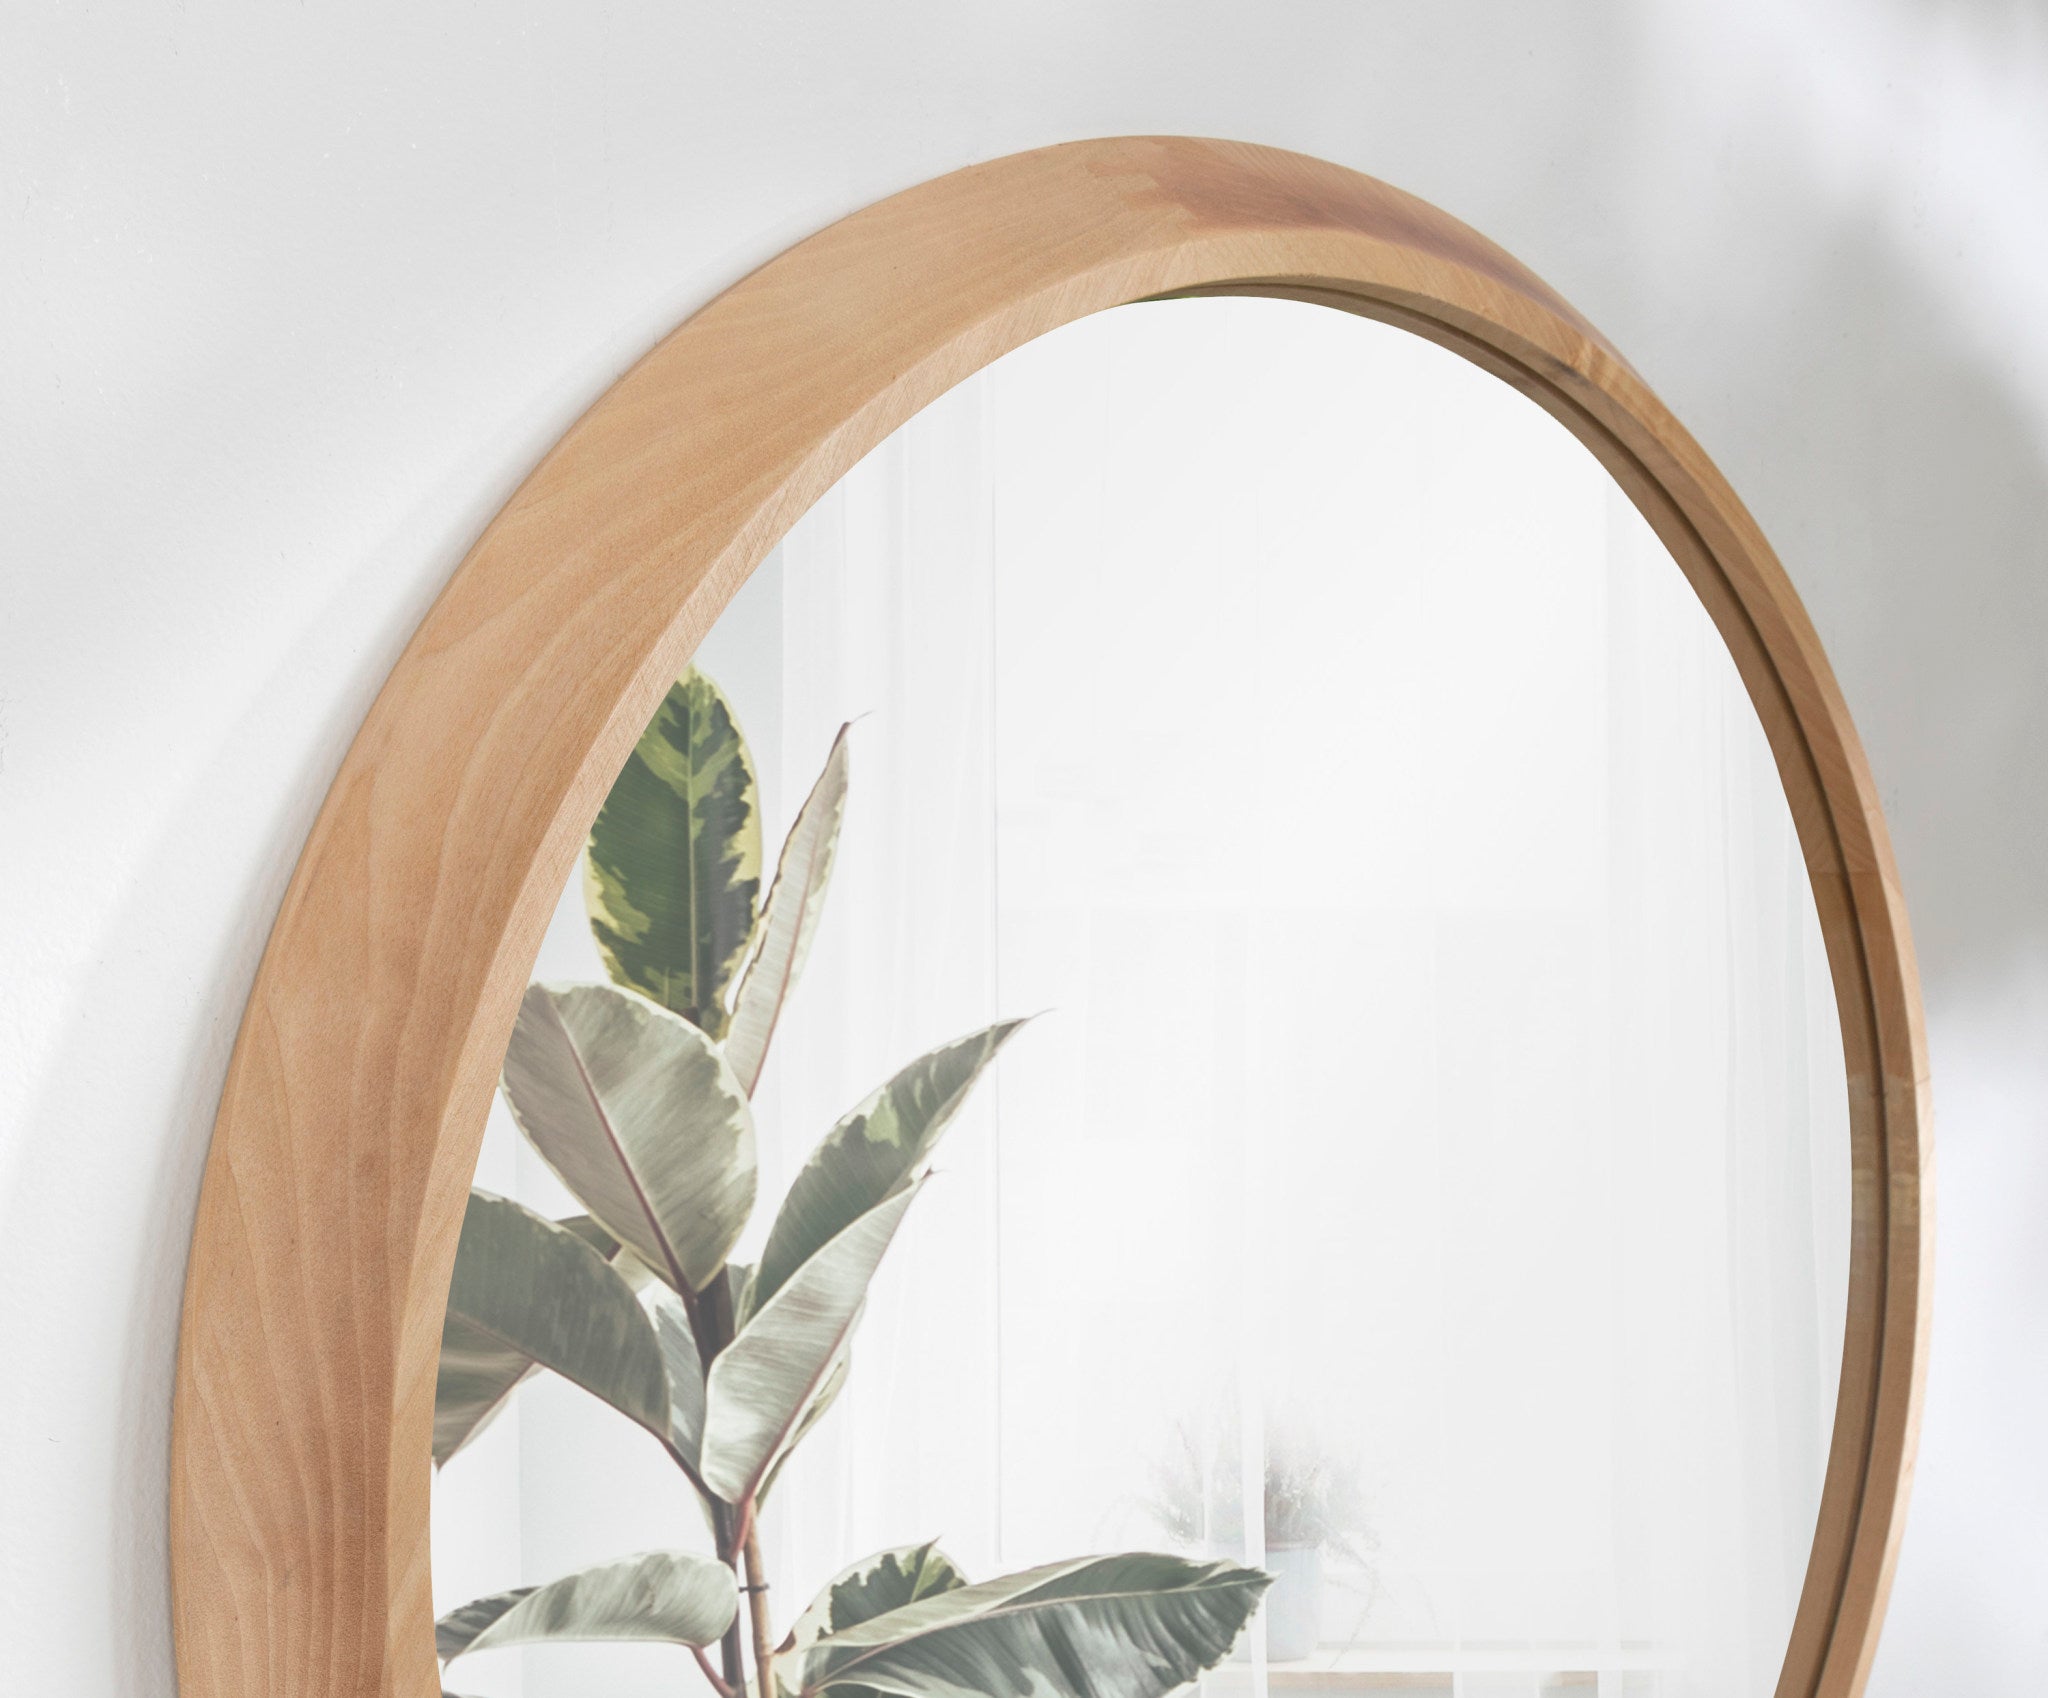 Uldrich Wood Framed Mirror